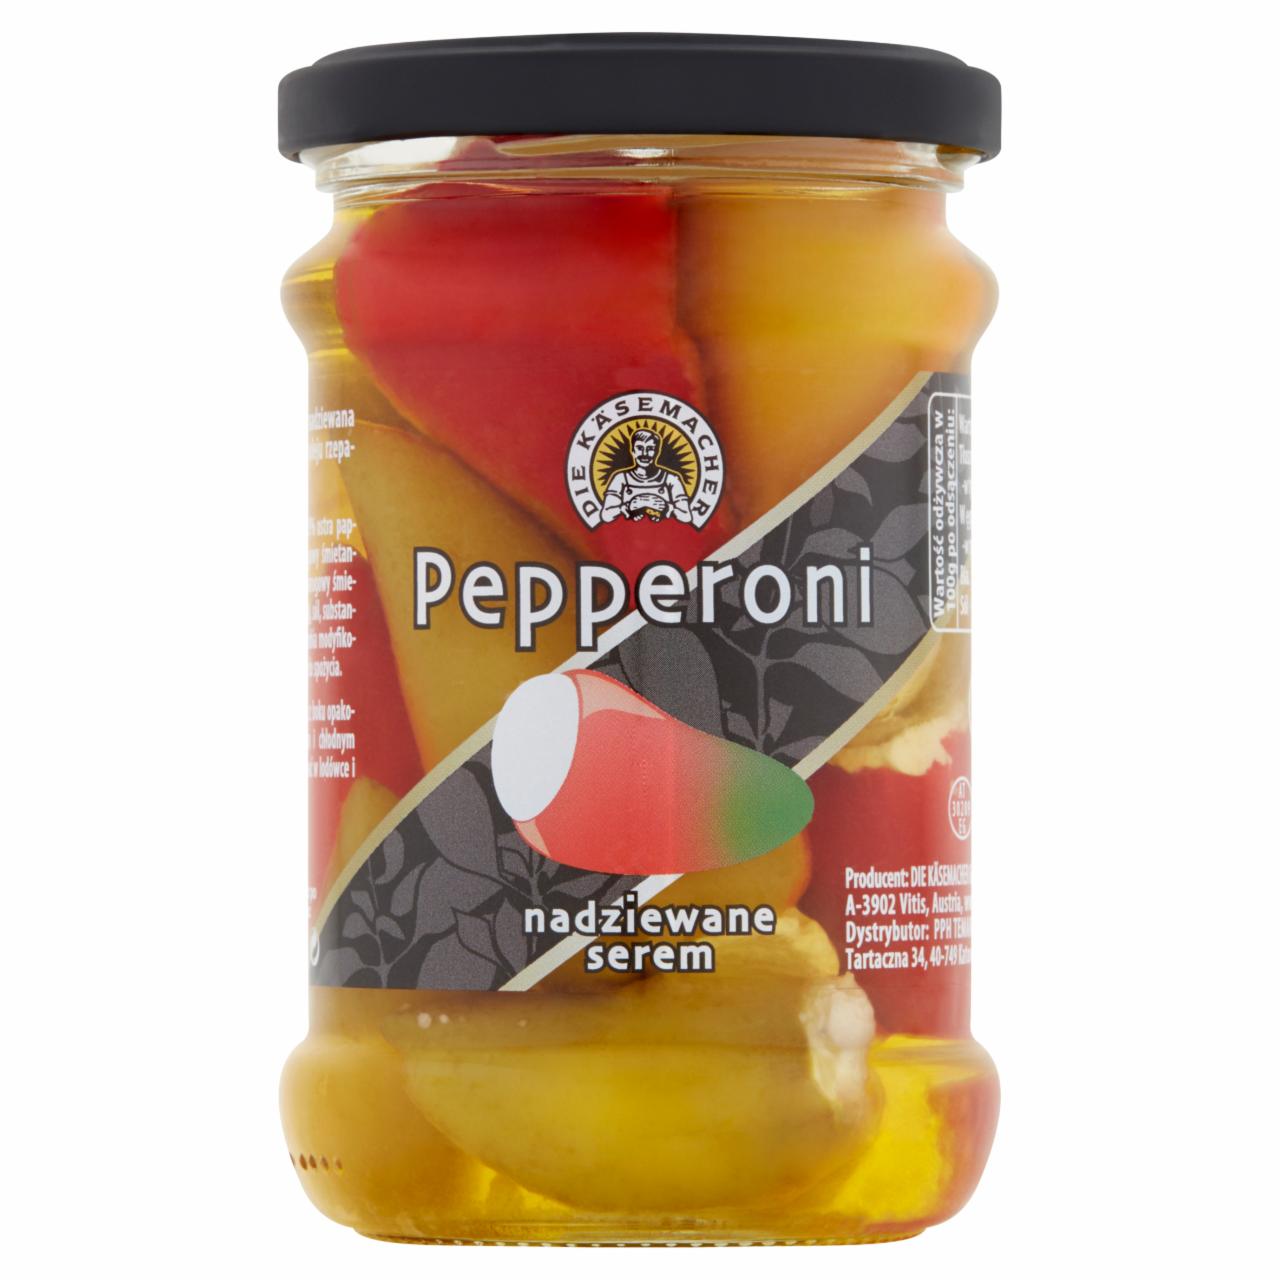 Zdjęcia - Die Kasemacher Pepperoni nadziewane serem 250 g